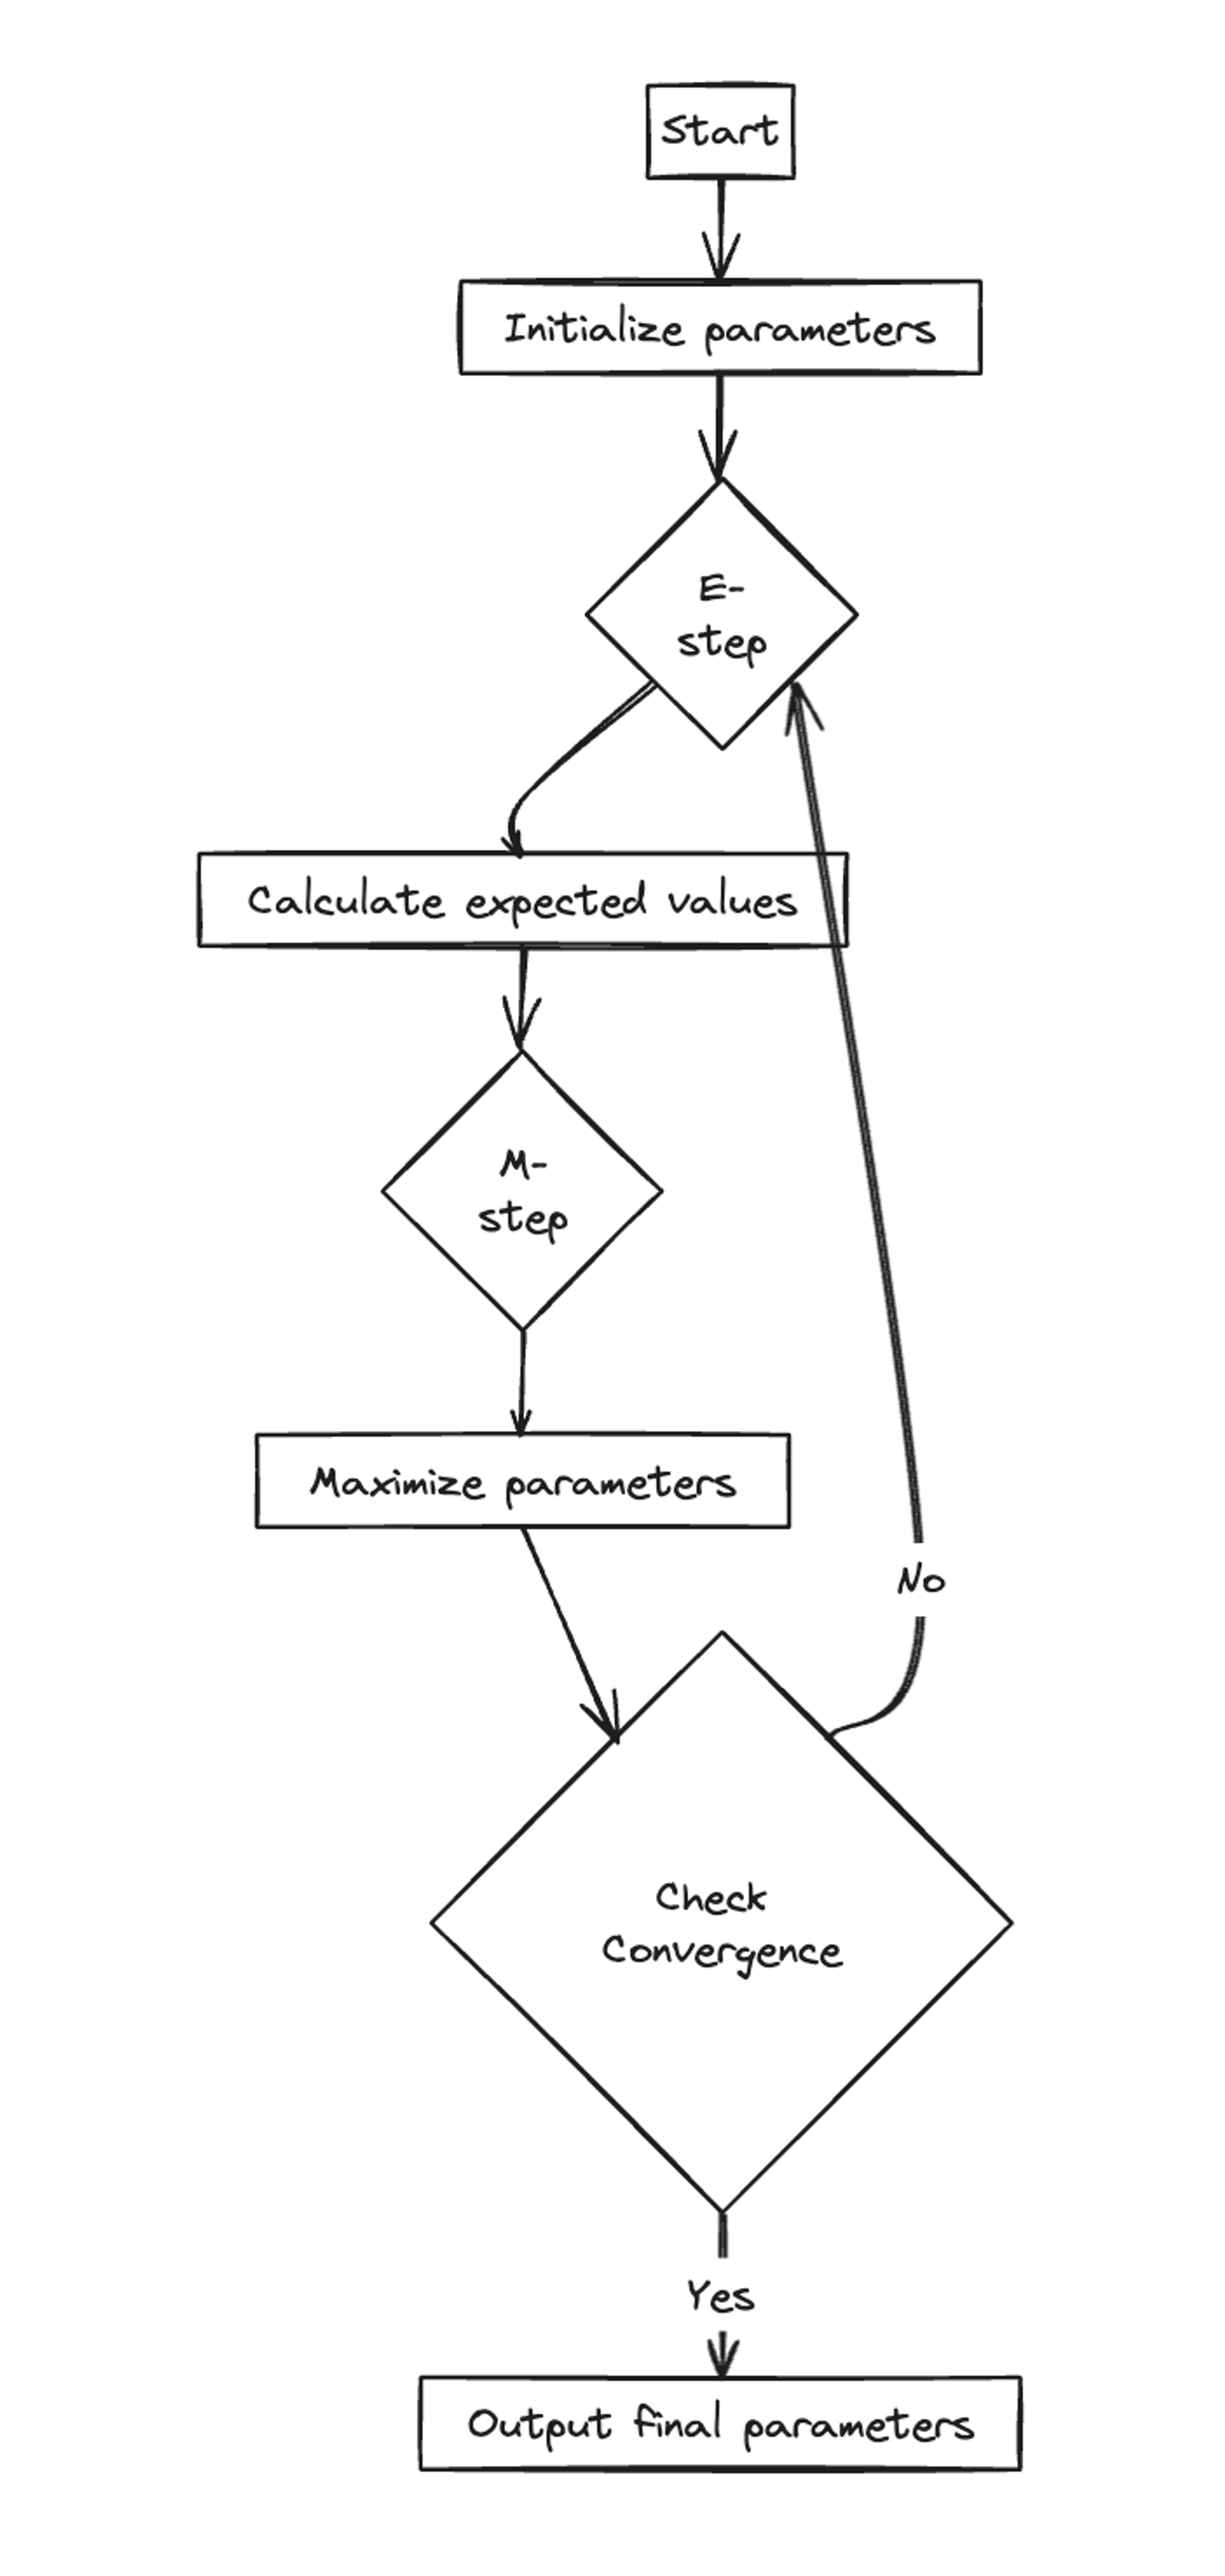 EM procedure diagram